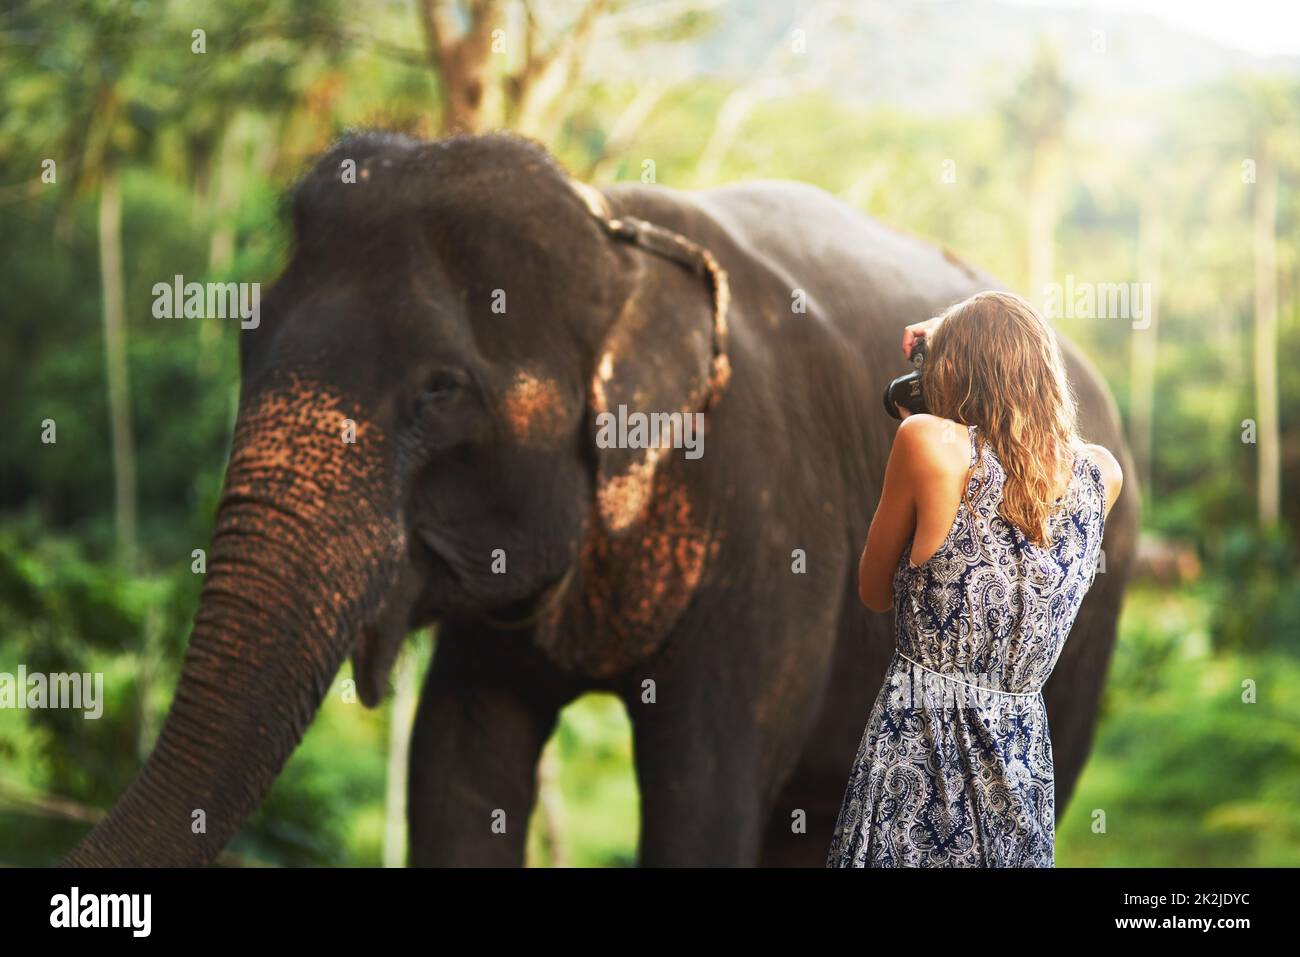 Groß und wunderschön. Aufnahme einer jungen Frau, die ein Foto eines Elefanten fotografiert, der im Dschungel Pflanzen frisst. Stockfoto